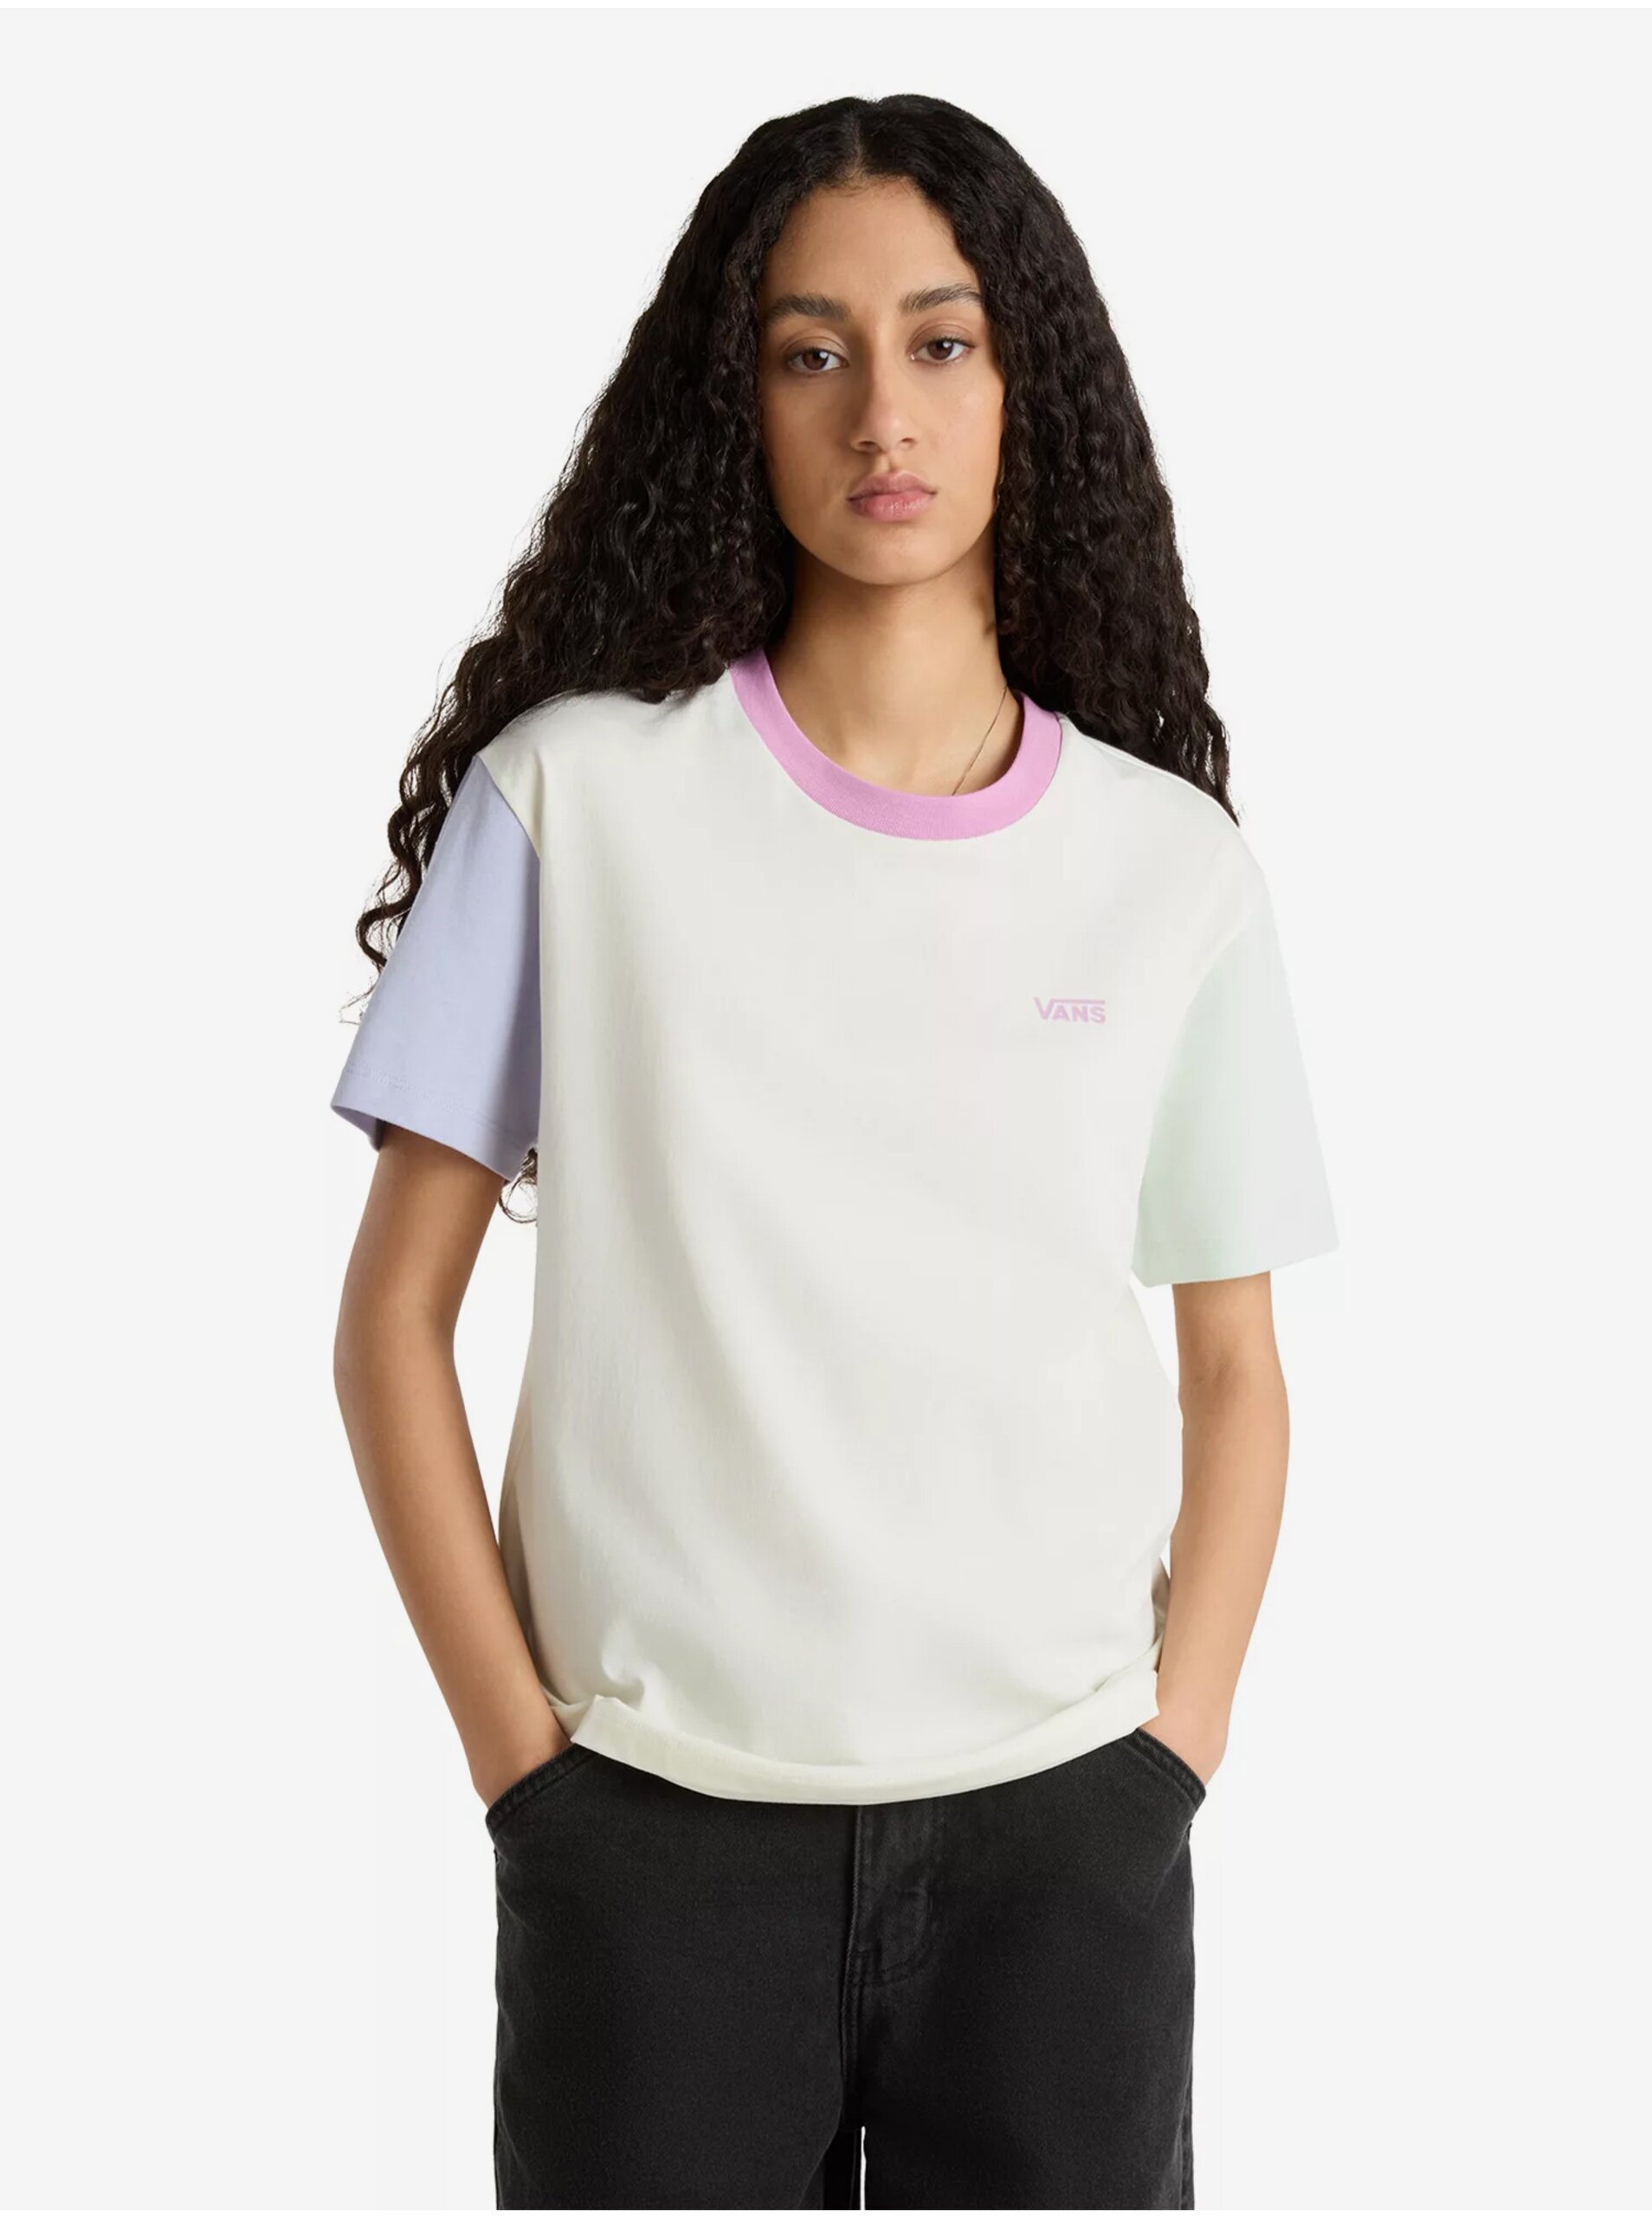 Creamy women's T-shirt VANS Colorblock - Women